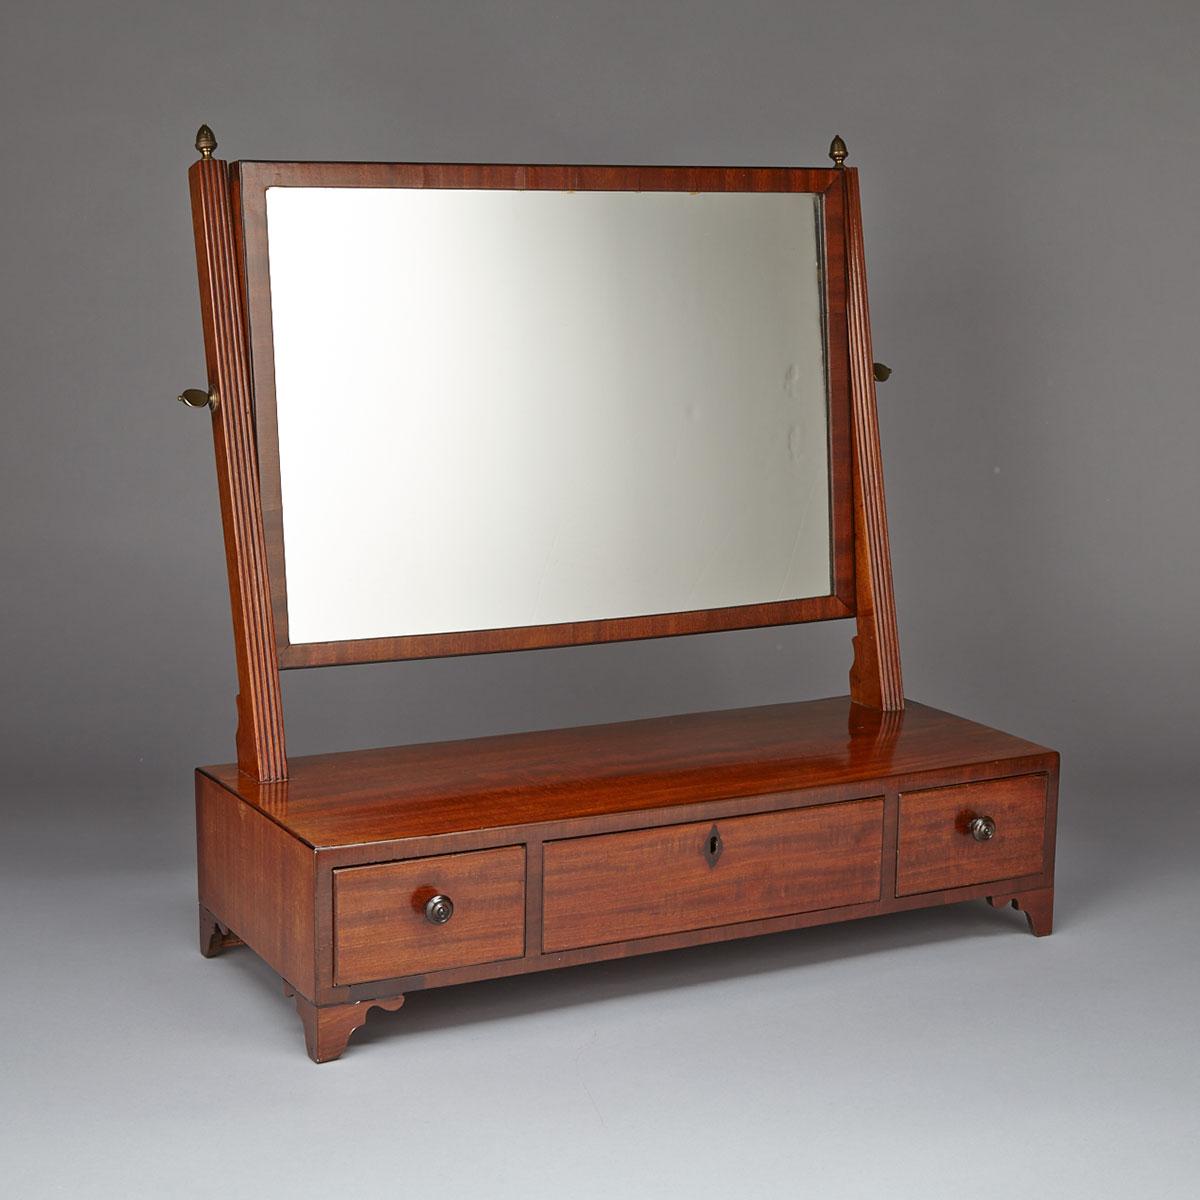 George III Sheraton Style Mahogany Shaving Mirror, early 19th century